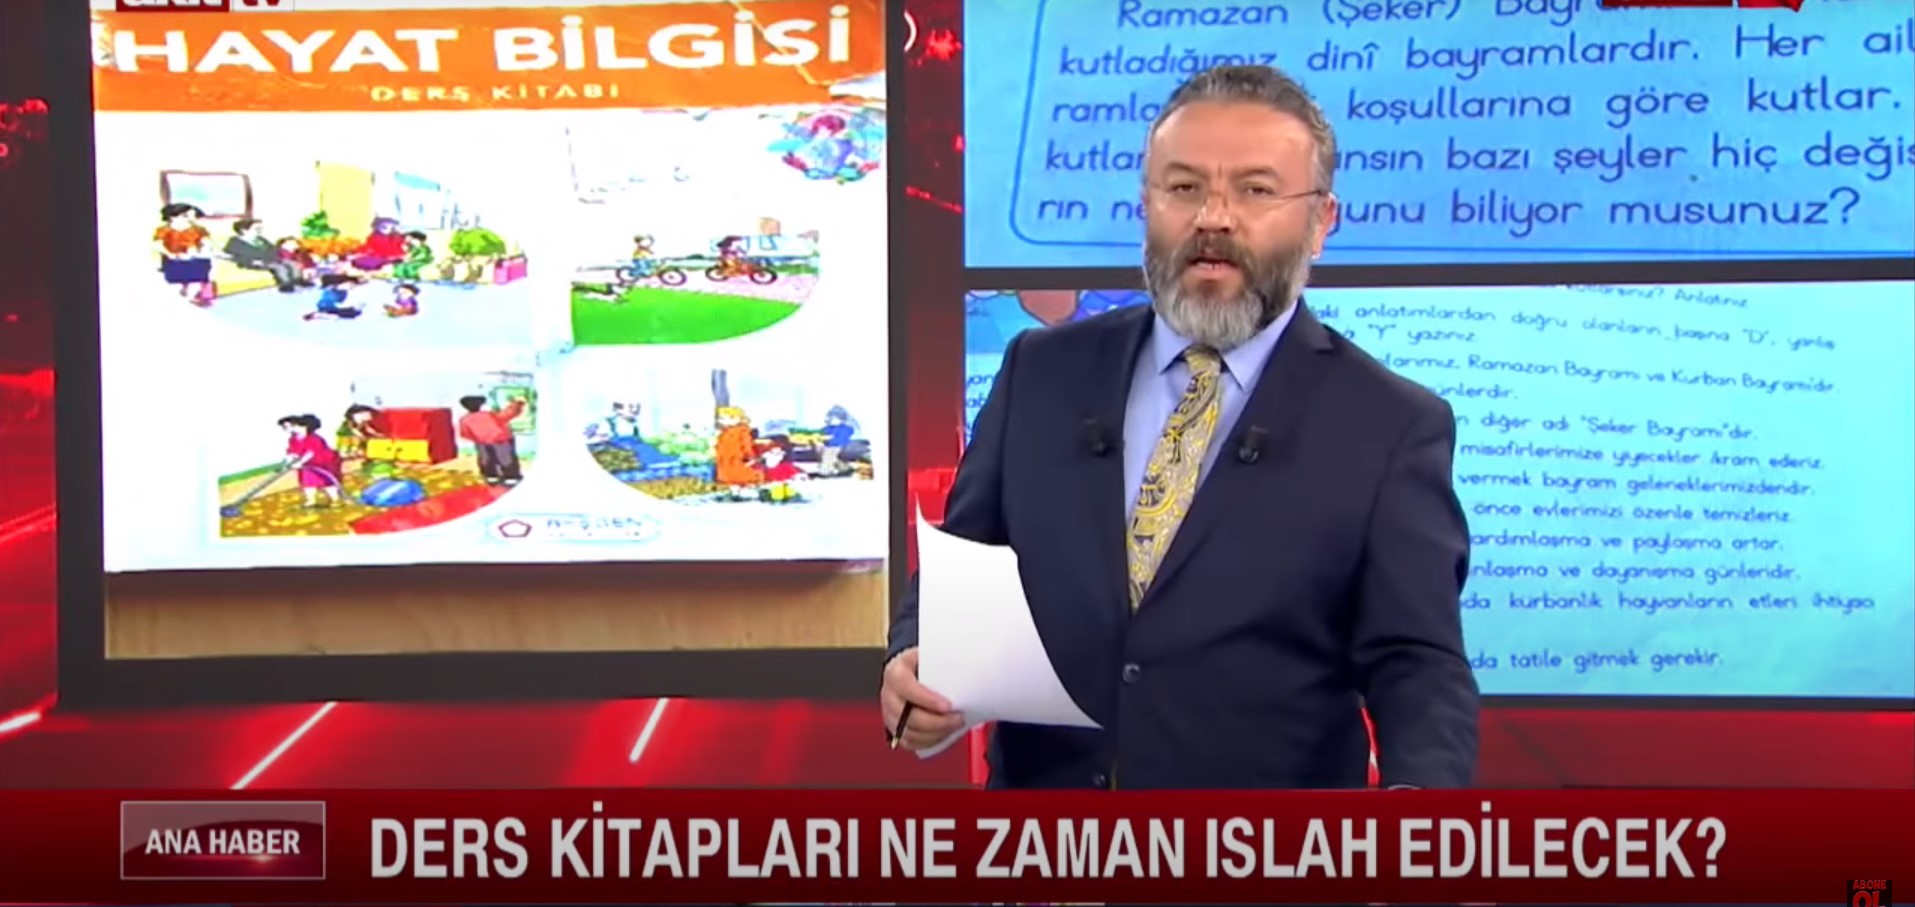 Akit TV sunucusu, ders kitaplarında Ramazan Bayramı'na 'Şeker' bayramı dendiği için canlı yayında sinirden çılgına döndü! Türkiye'nin altından halısı çekildi!